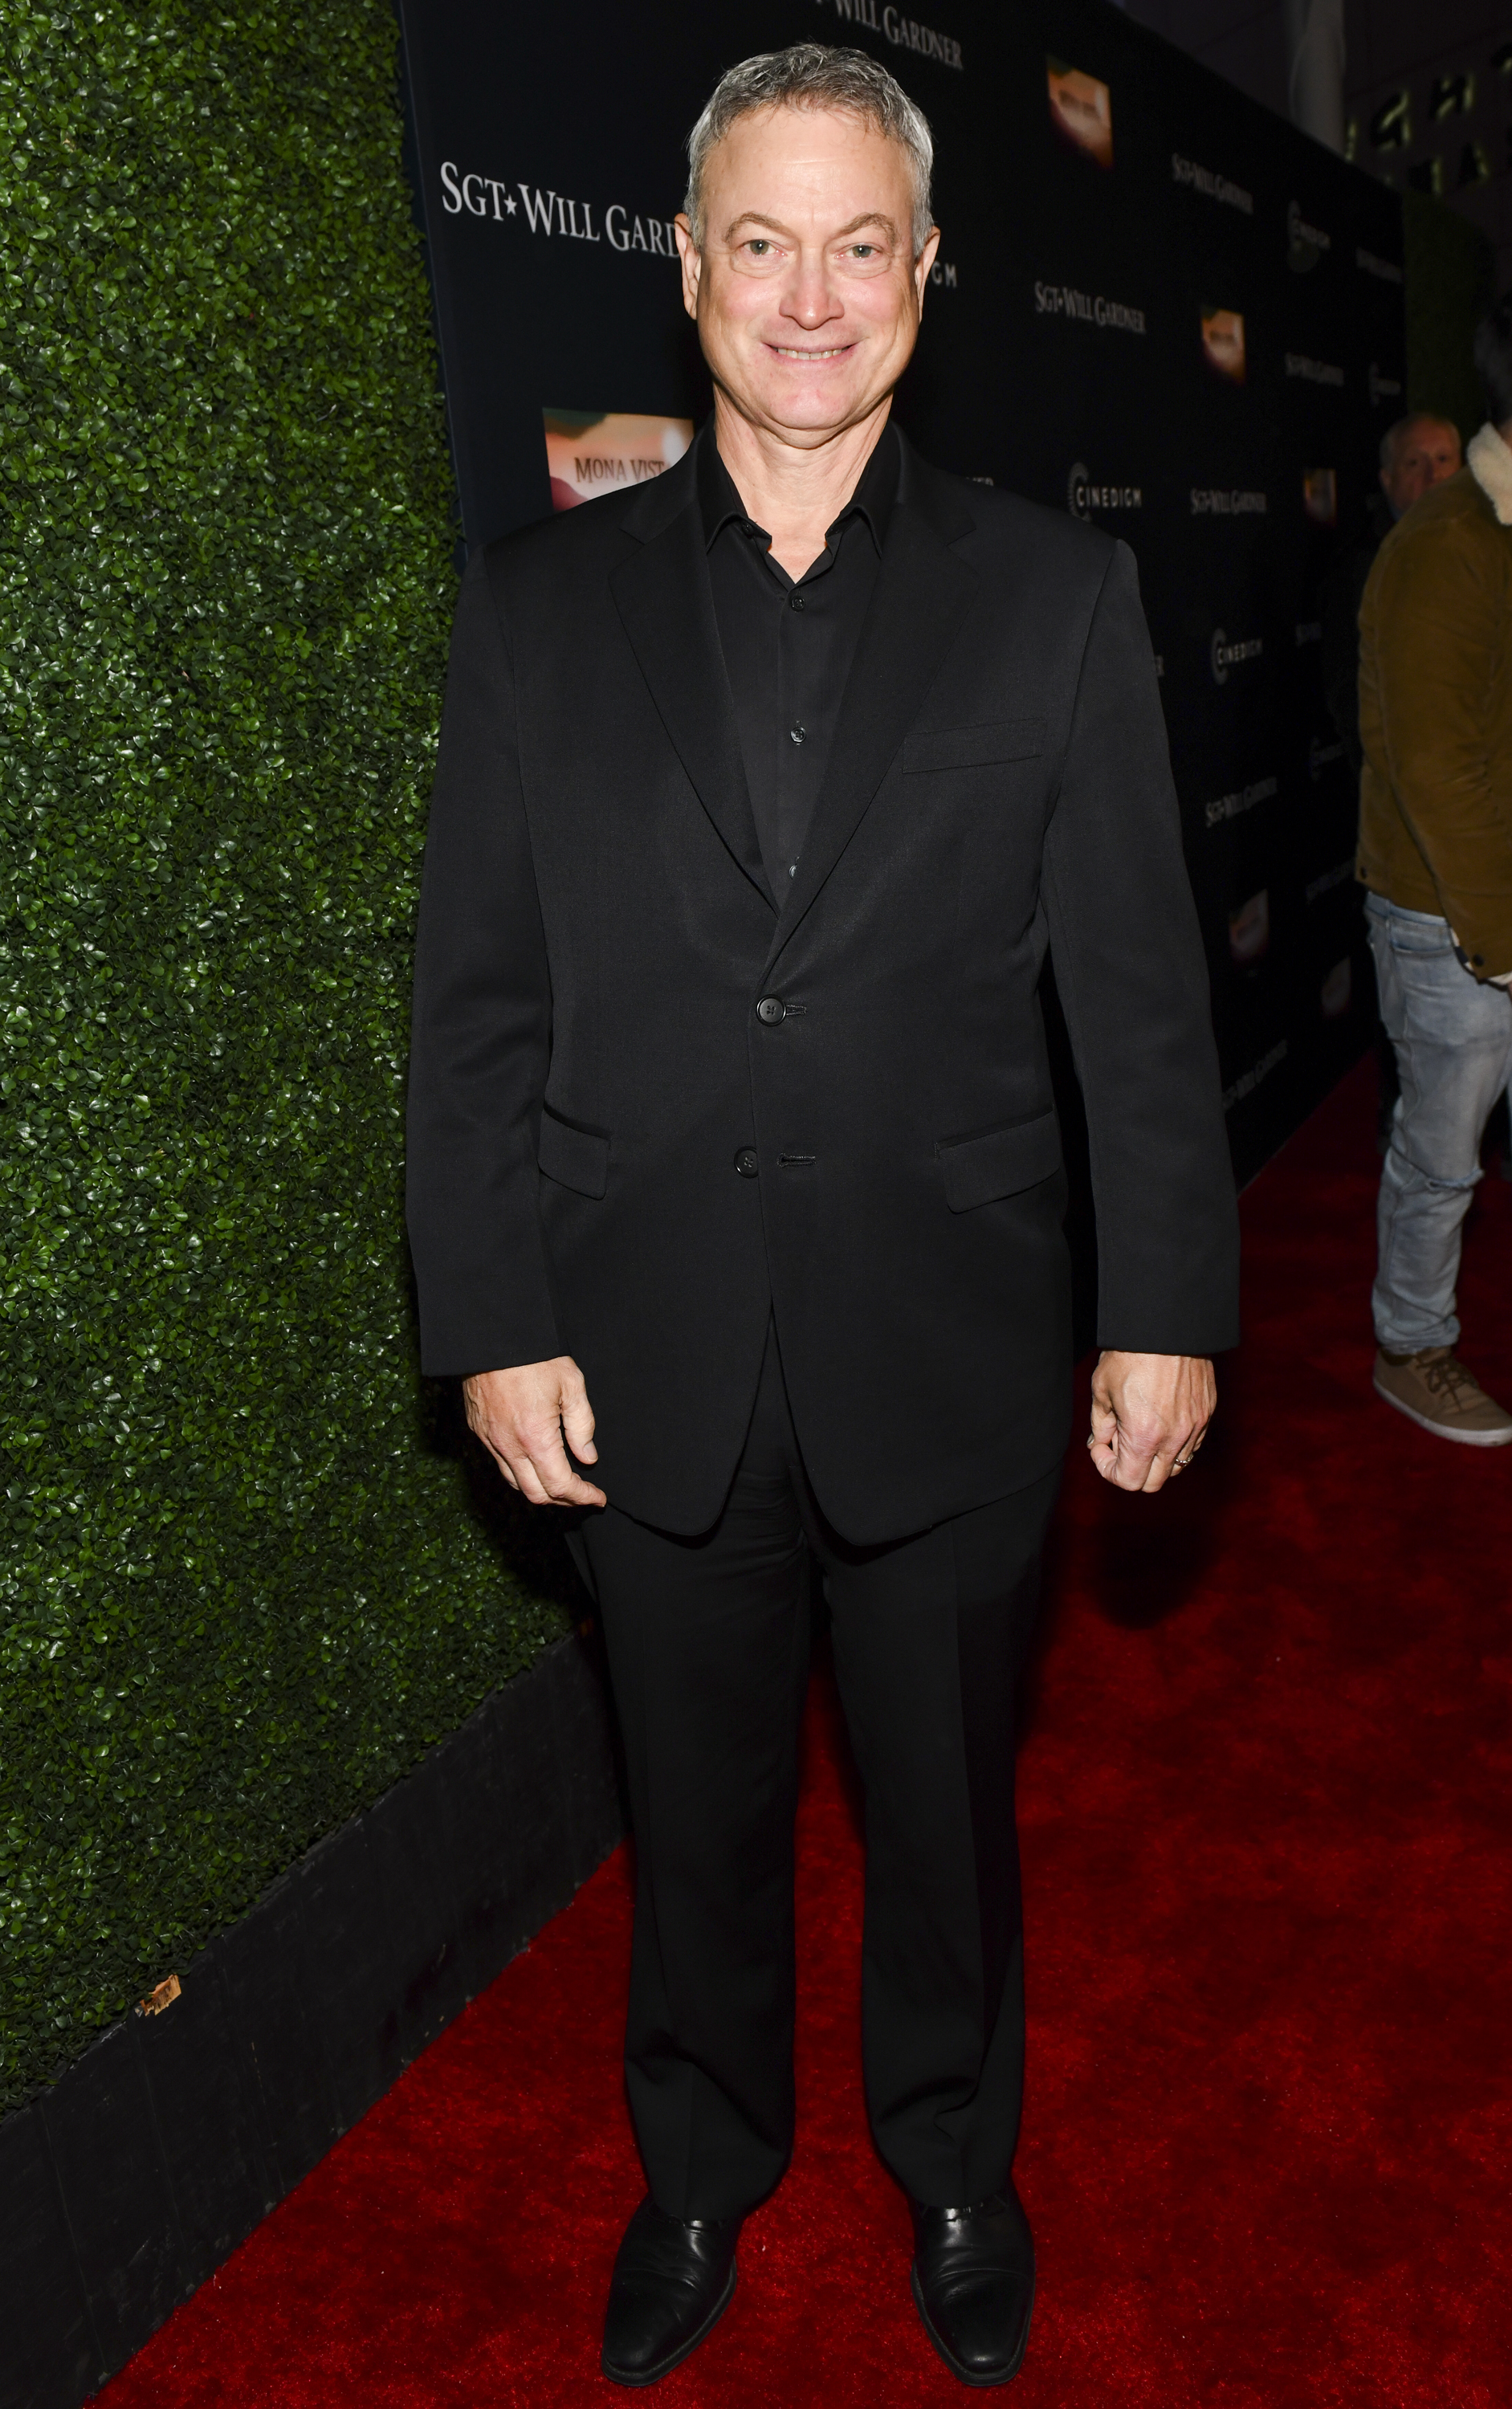 Gary Sinise tham dự buổi ra mắt phim "SGT. Will Gardner" của Cinedigm Entertainment Group tại ArcLight Hollywood ở Hollywood, California, vào ngày 8 tháng 1 năm 2019. | Nguồn: Getty Images